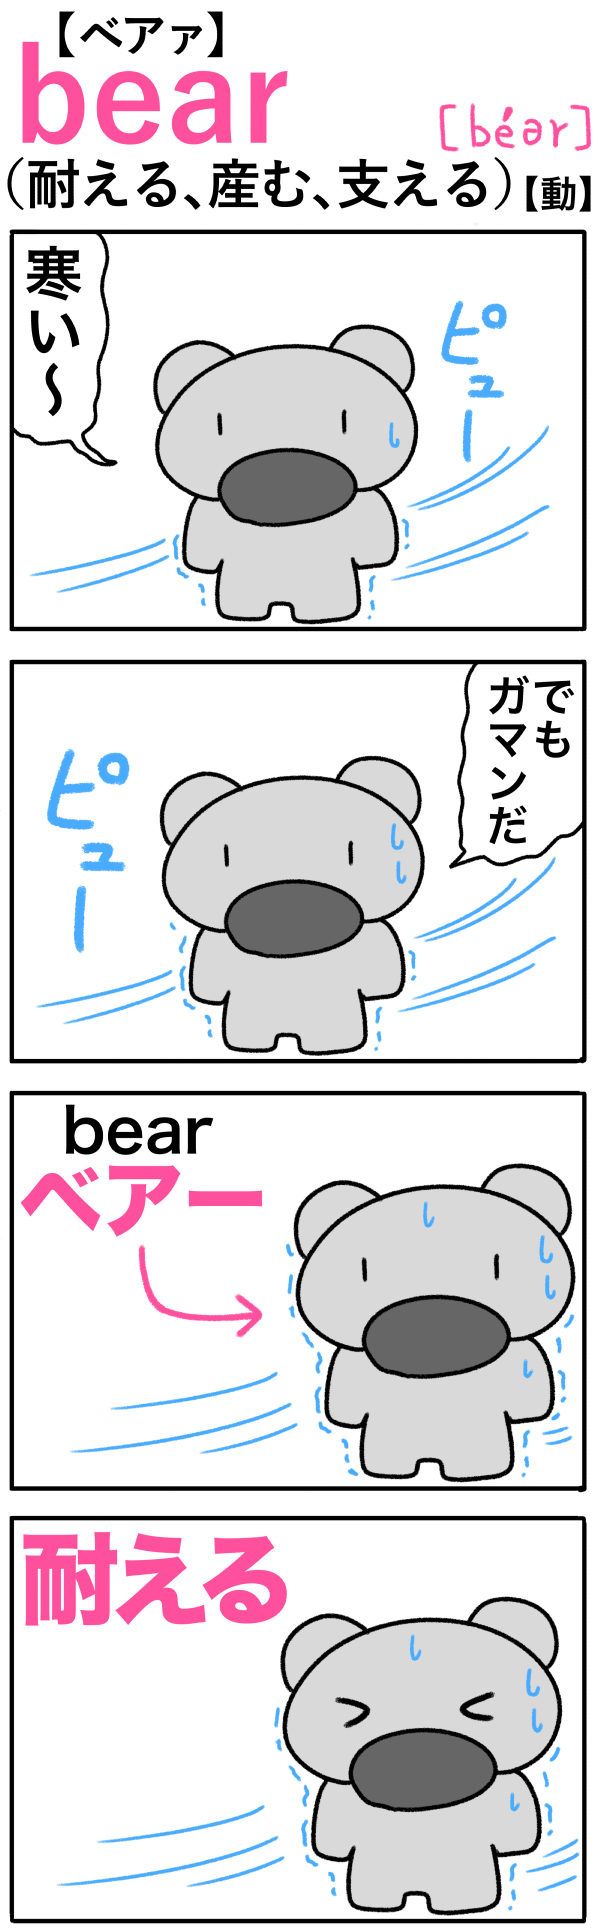 bear（耐える）の語呂合わせ英単語